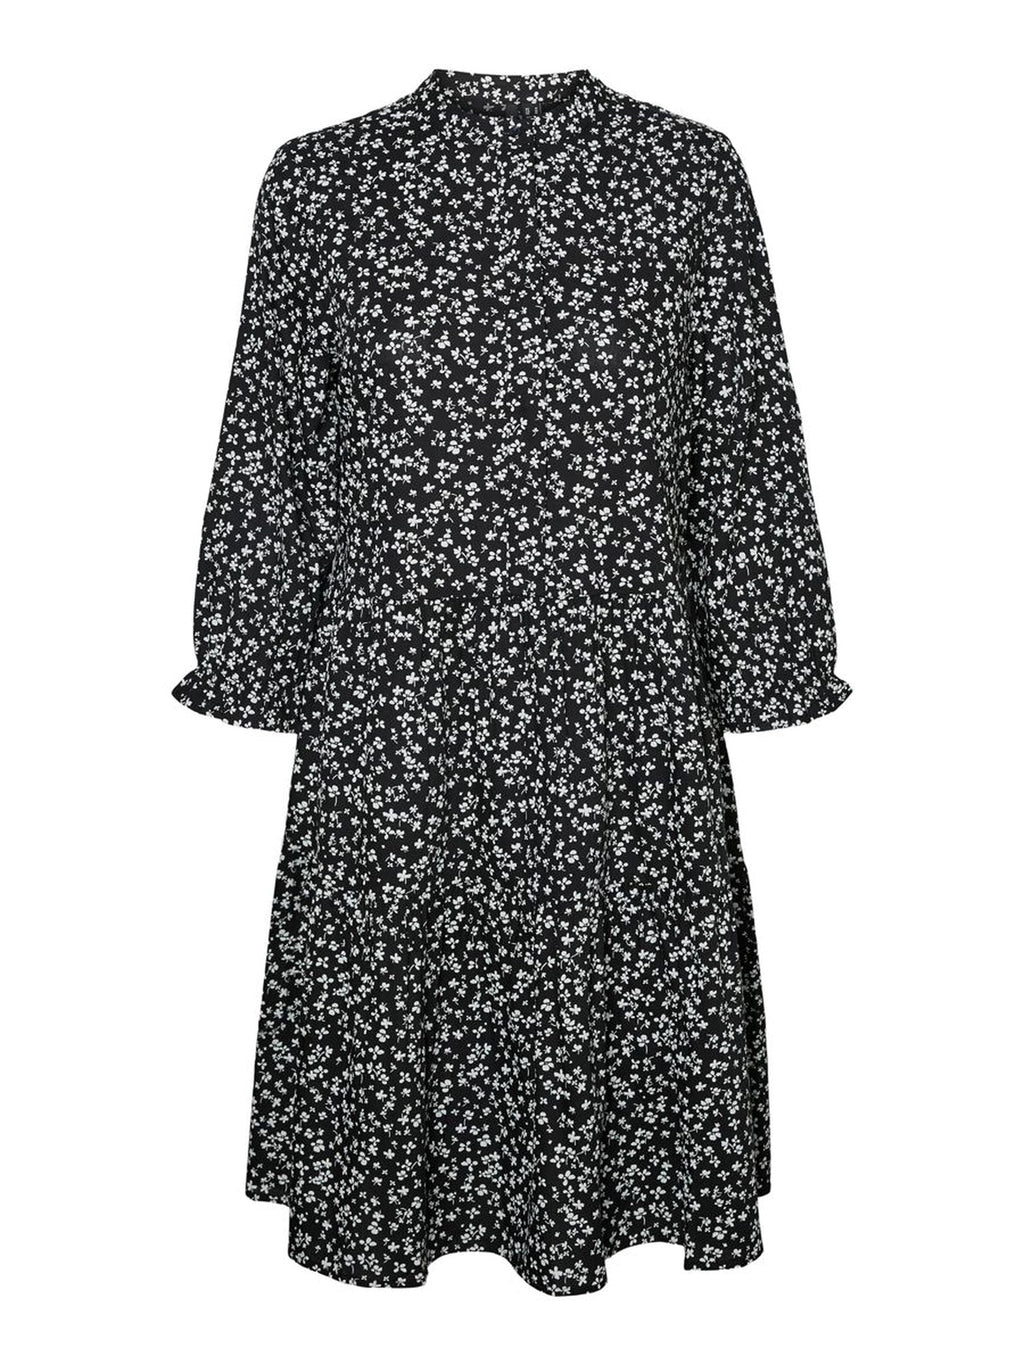 Simone mini haljina - crno -cvjetasti